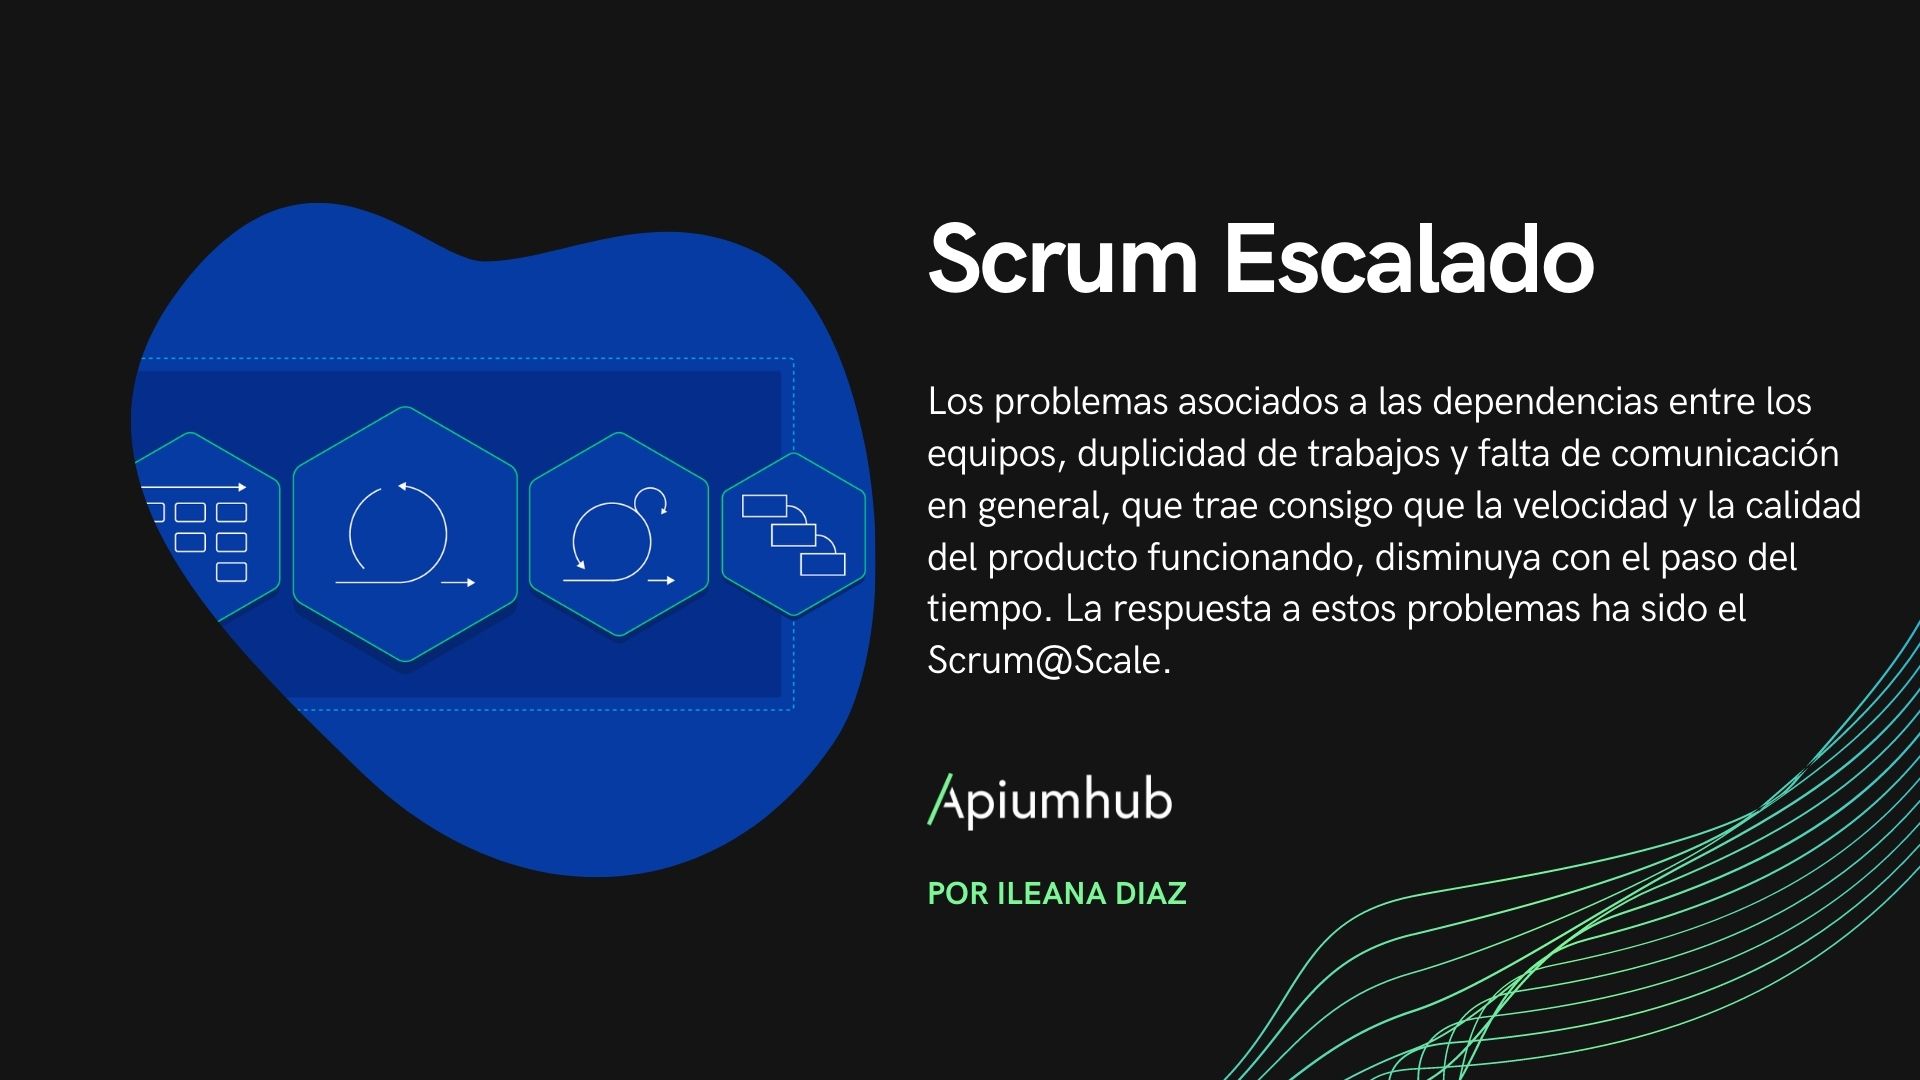 scrum@scale es